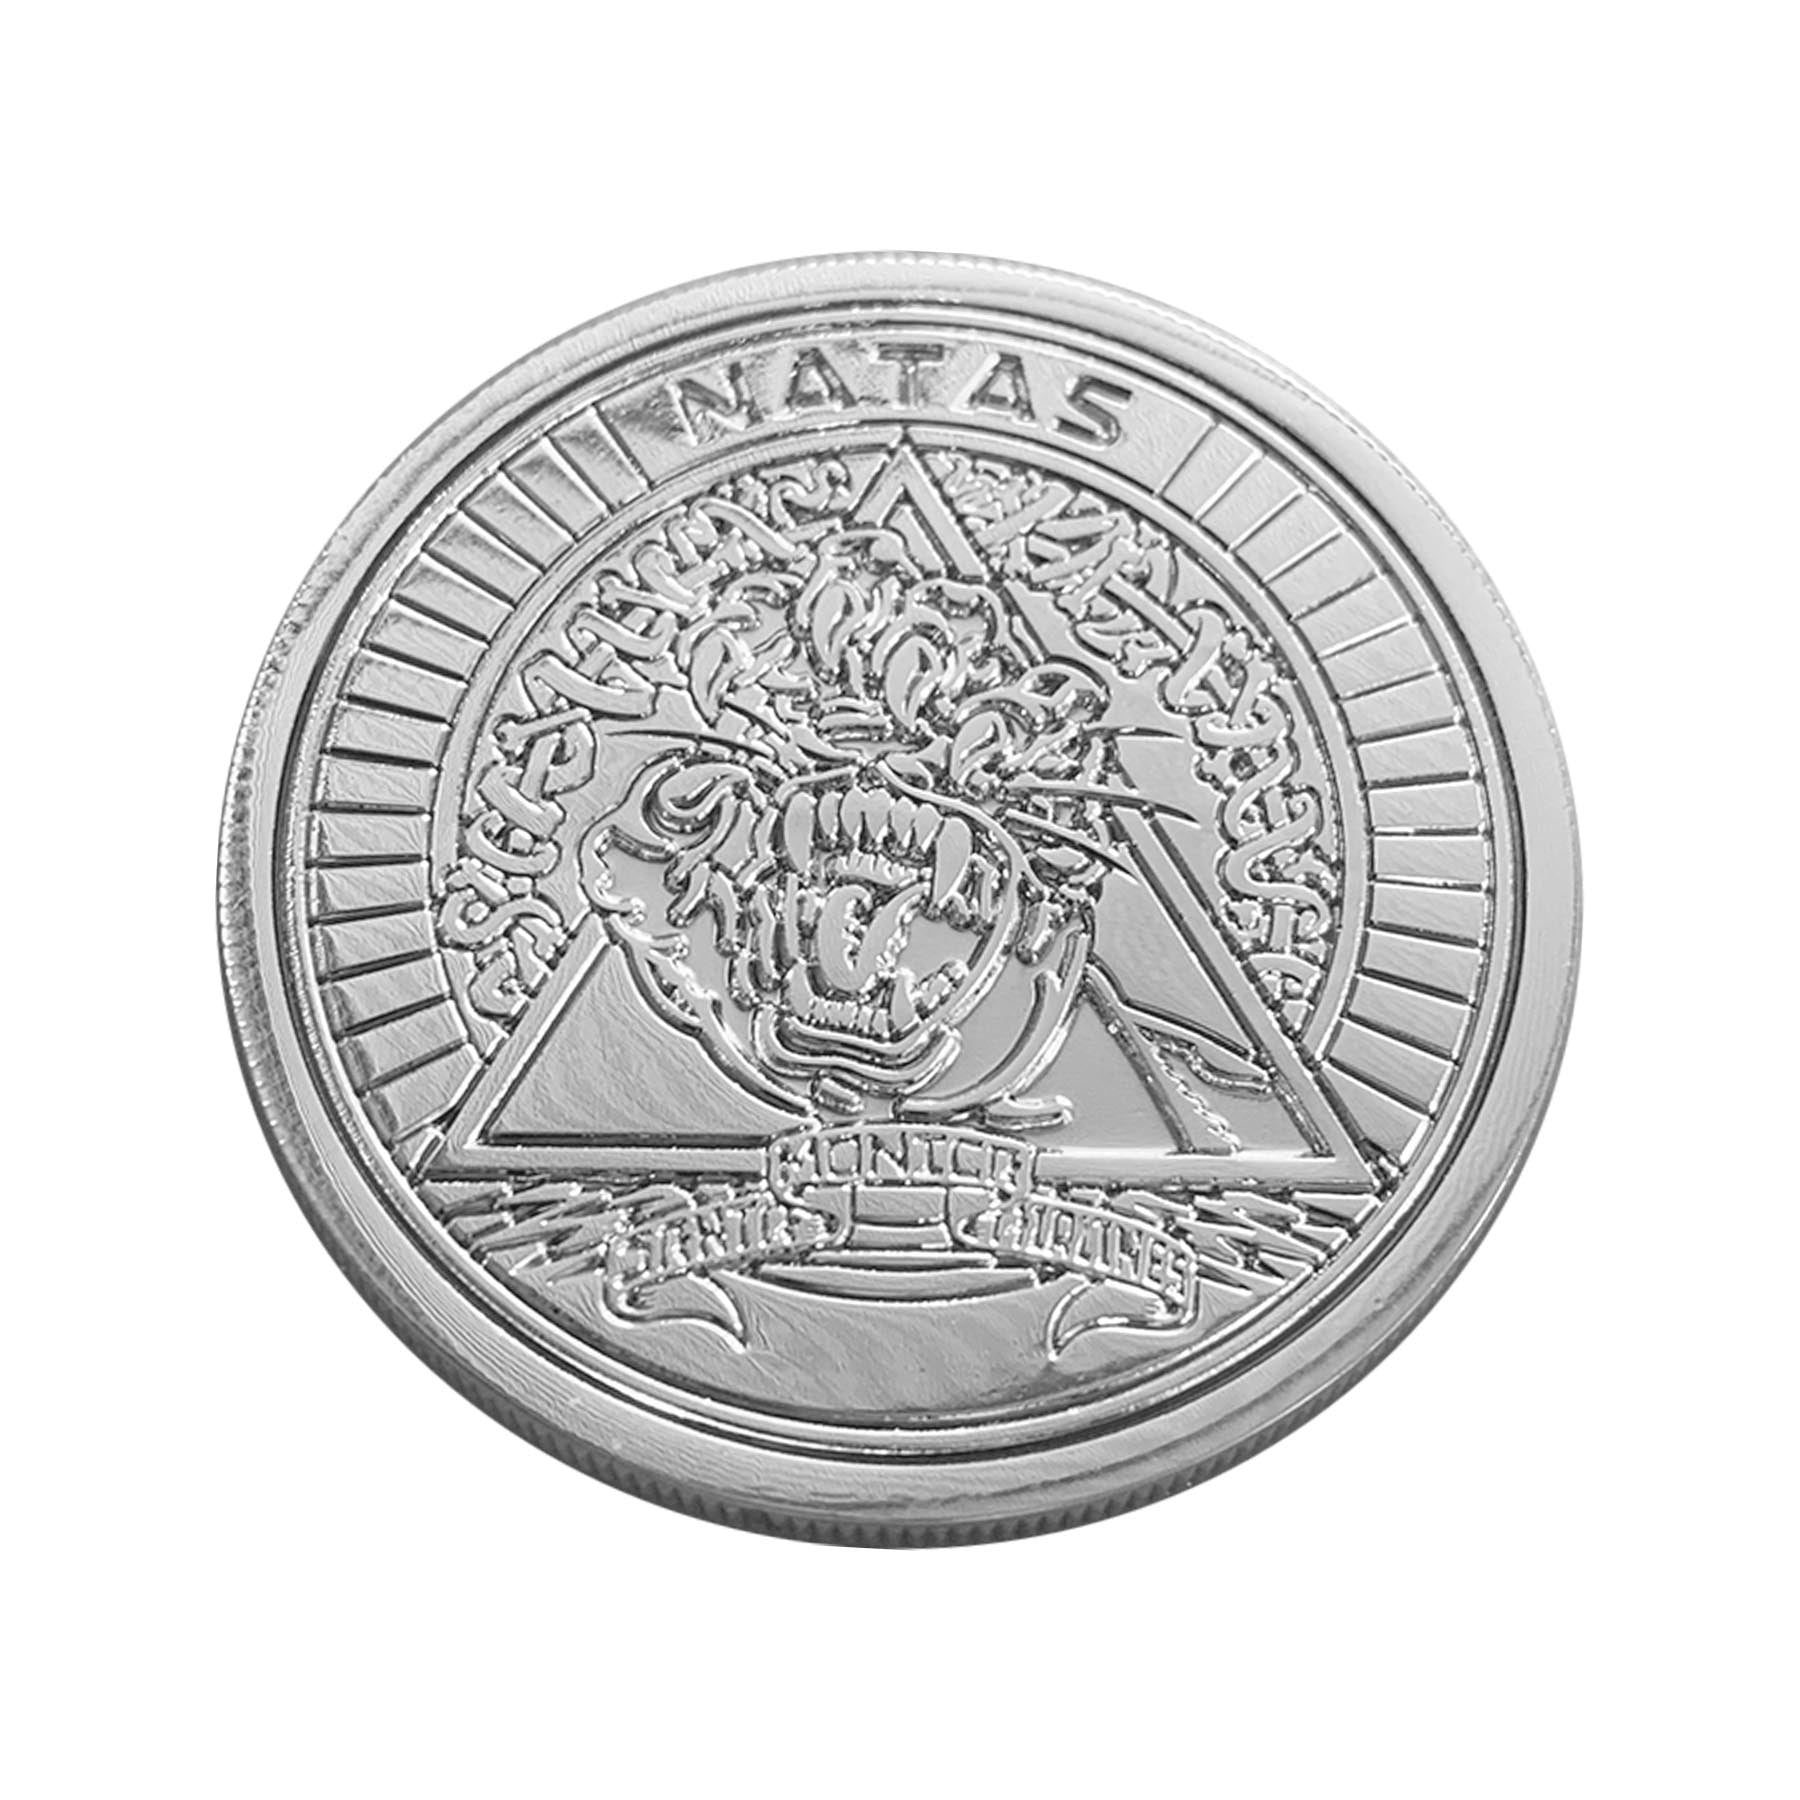 Santa Cruz Natas Collectors Coin